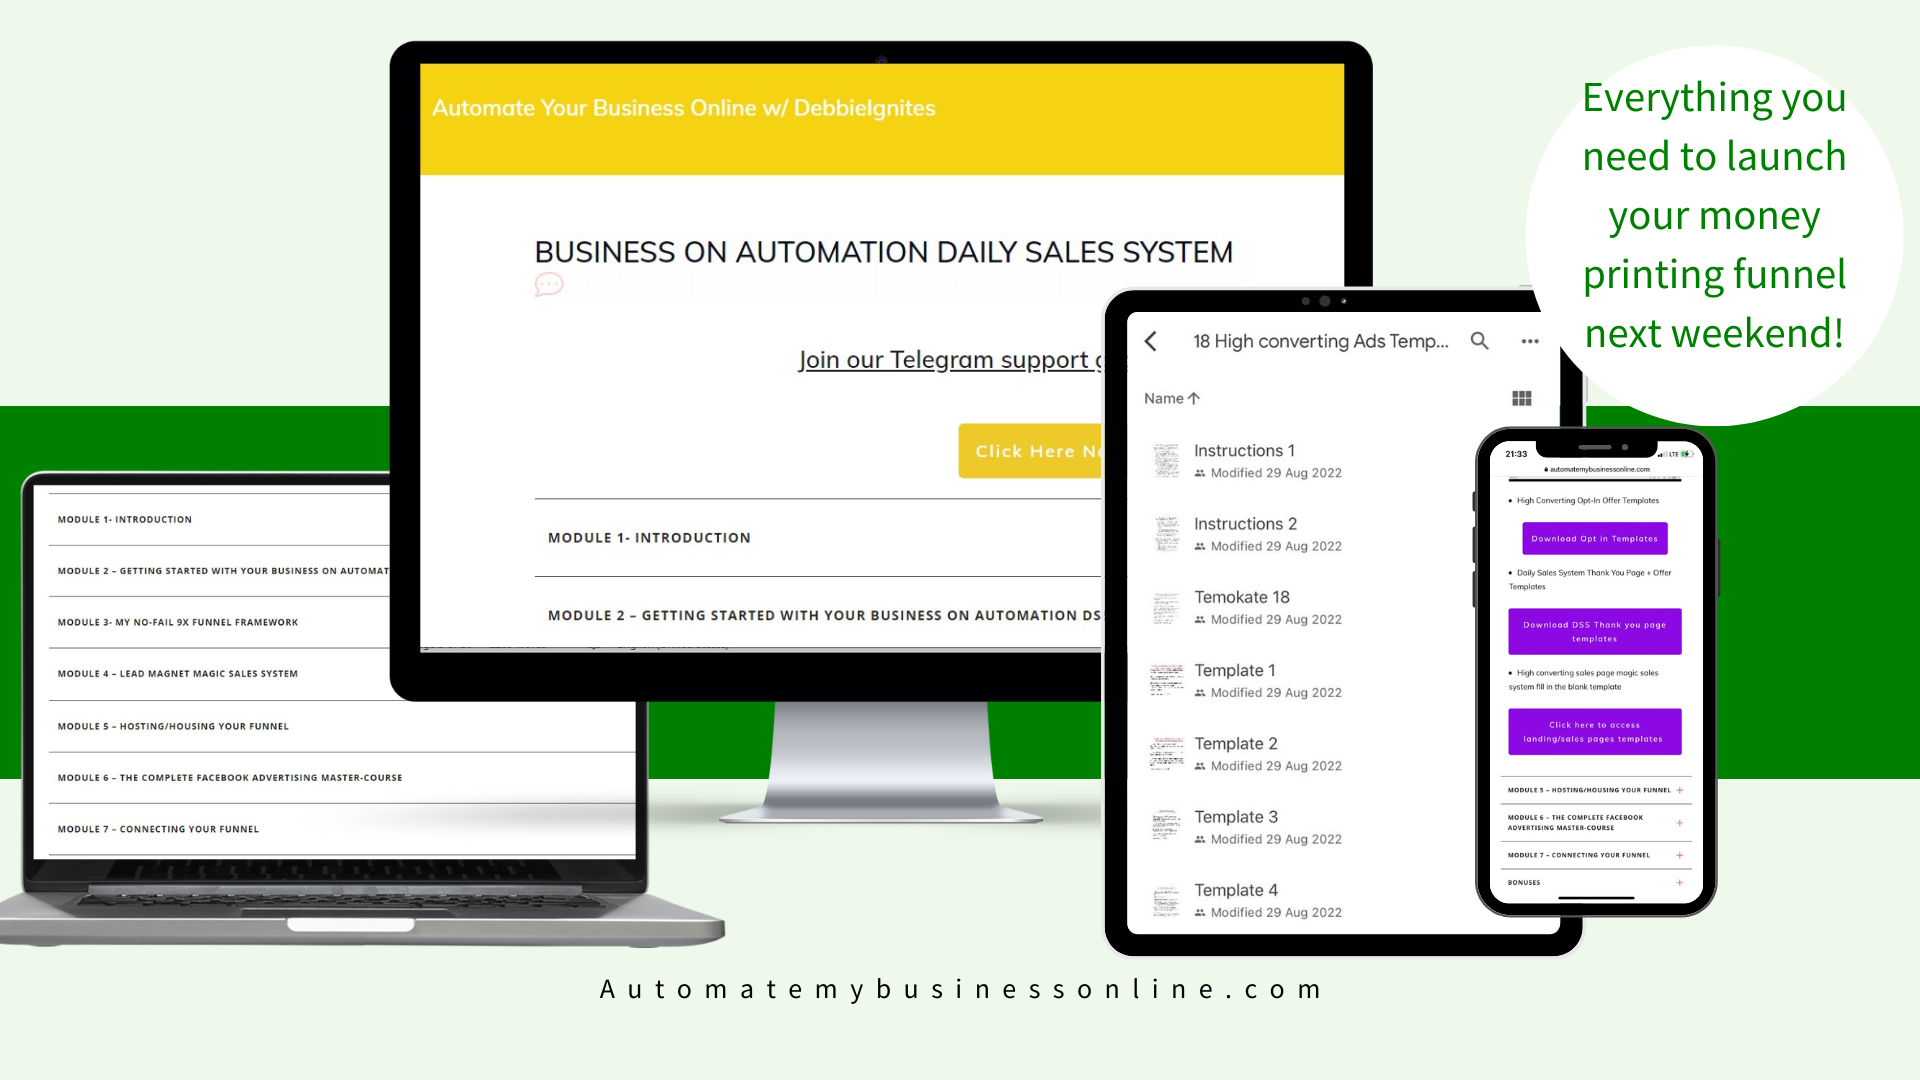 DebbieIgnites Automate your business online - Sales funnel